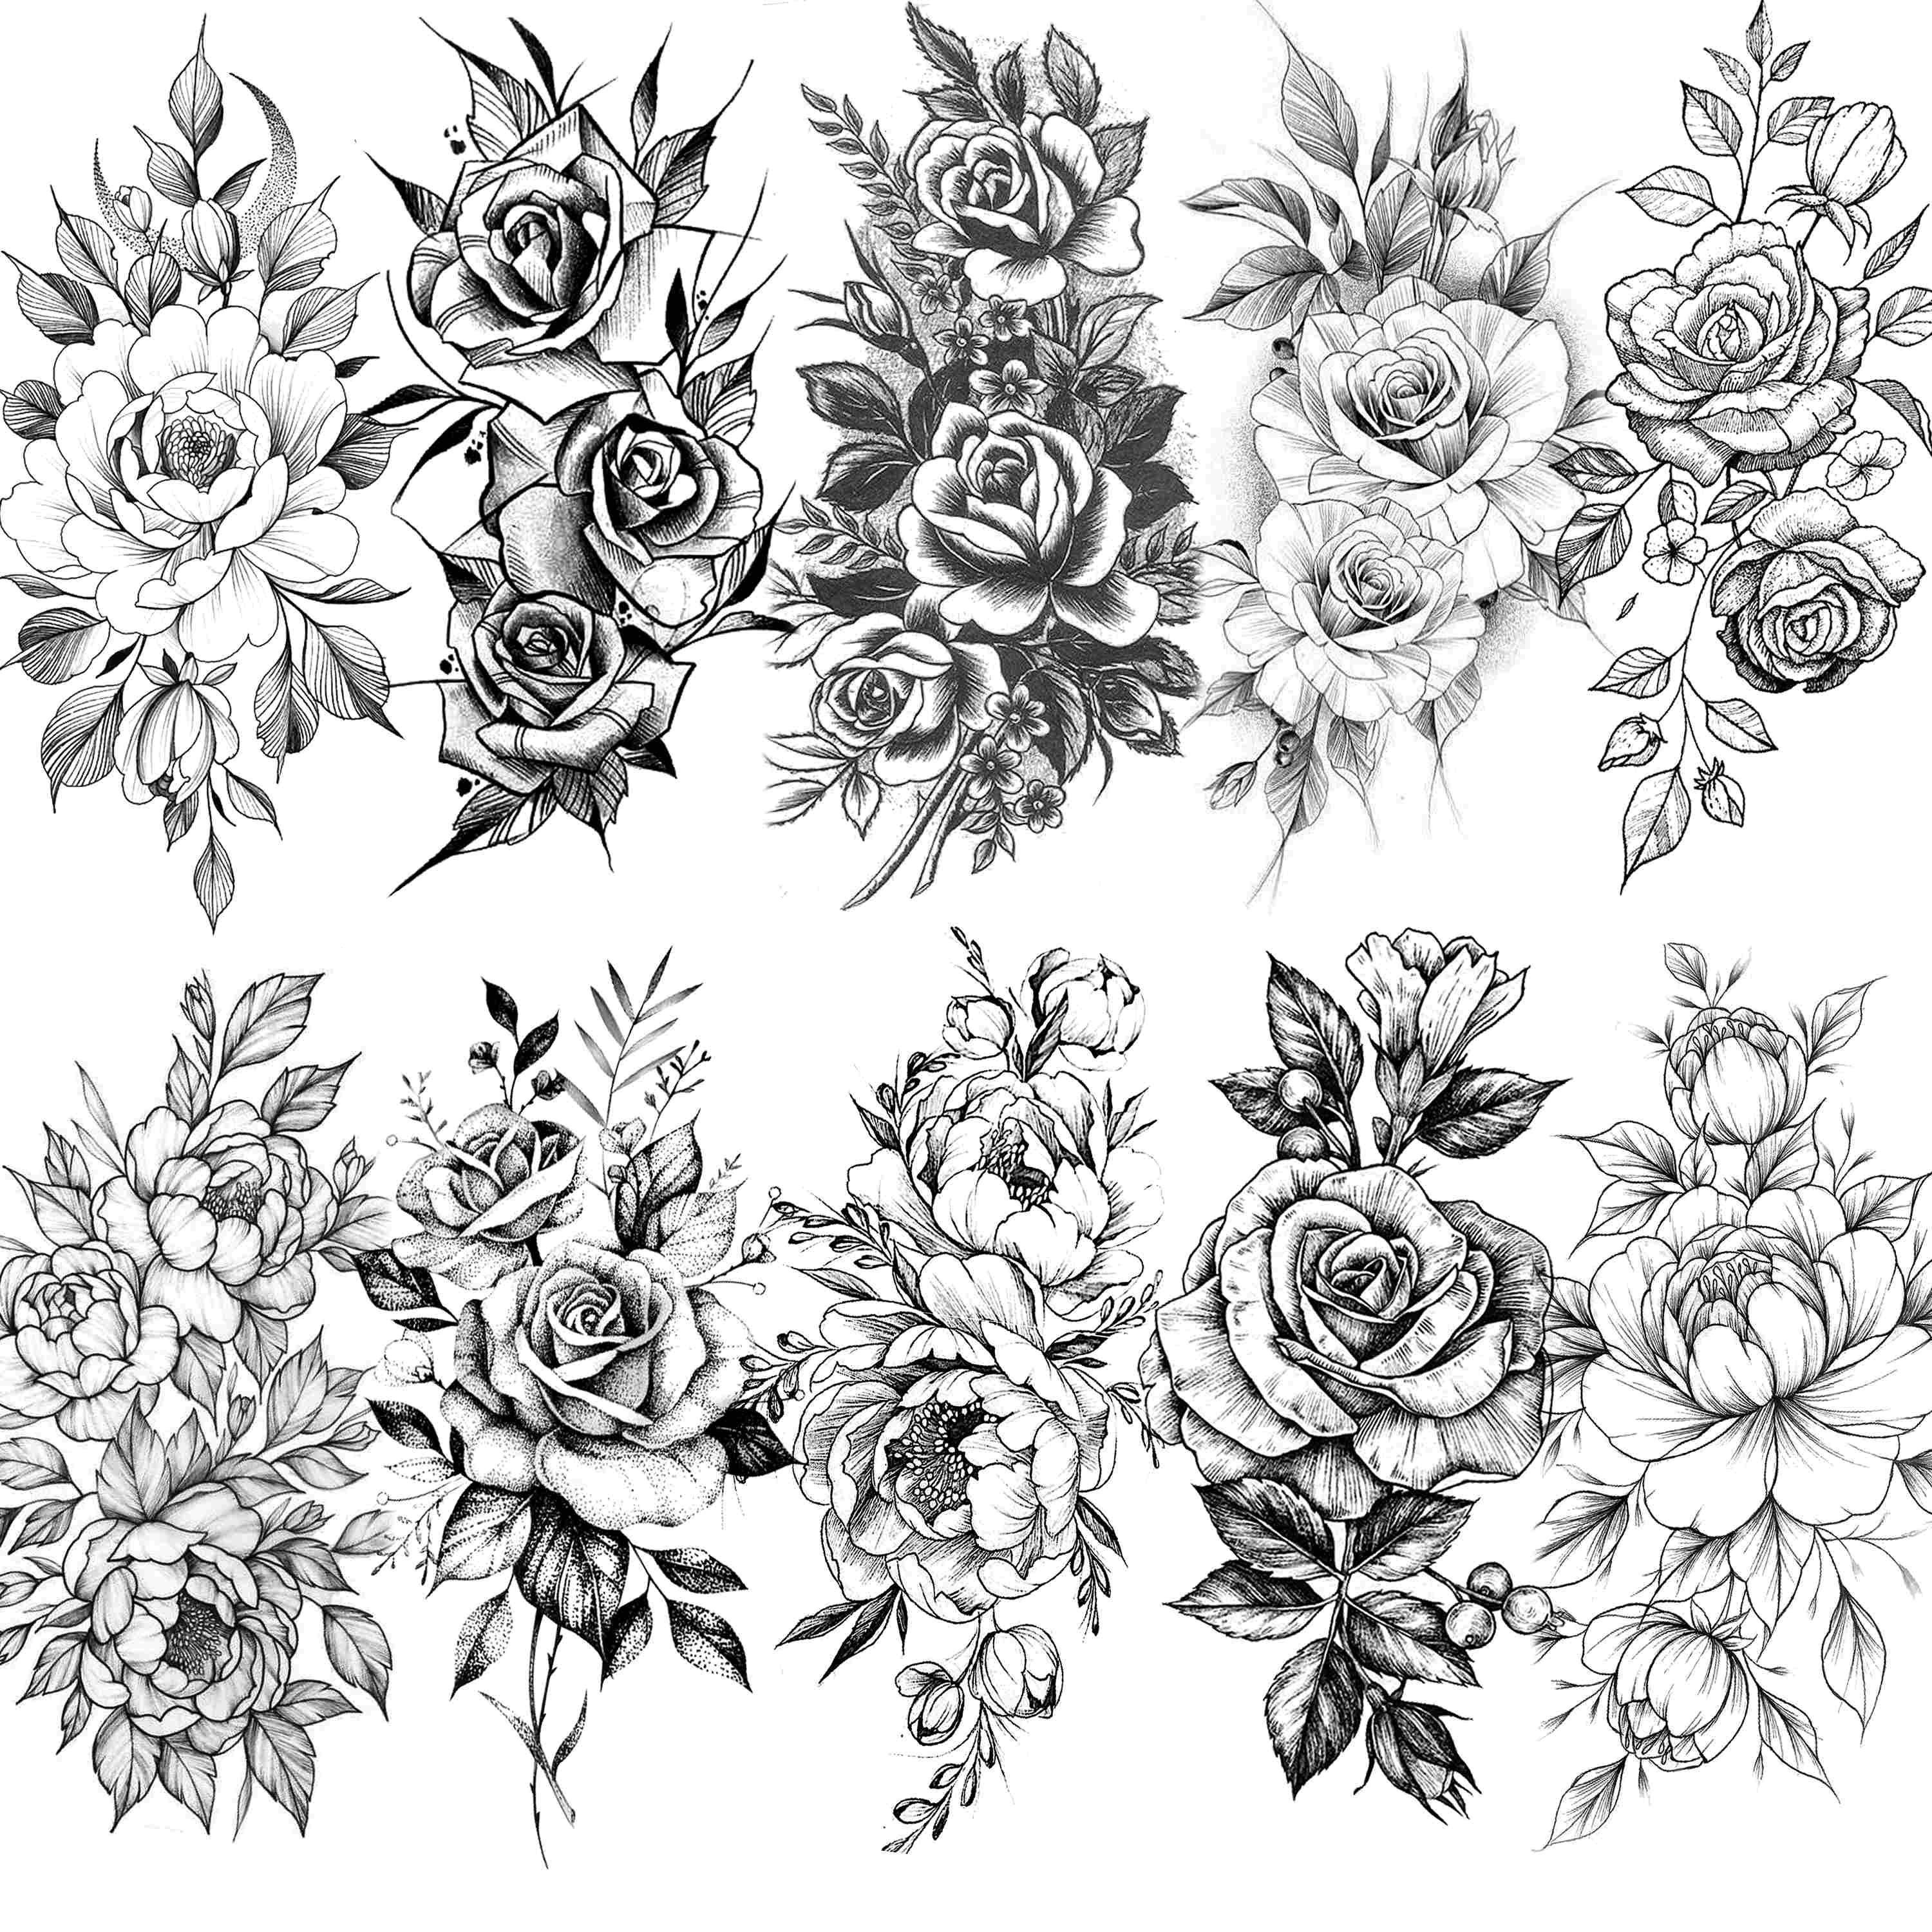 Tattooshka - Set tatuaggi temporanei Rosa selvatica e rami